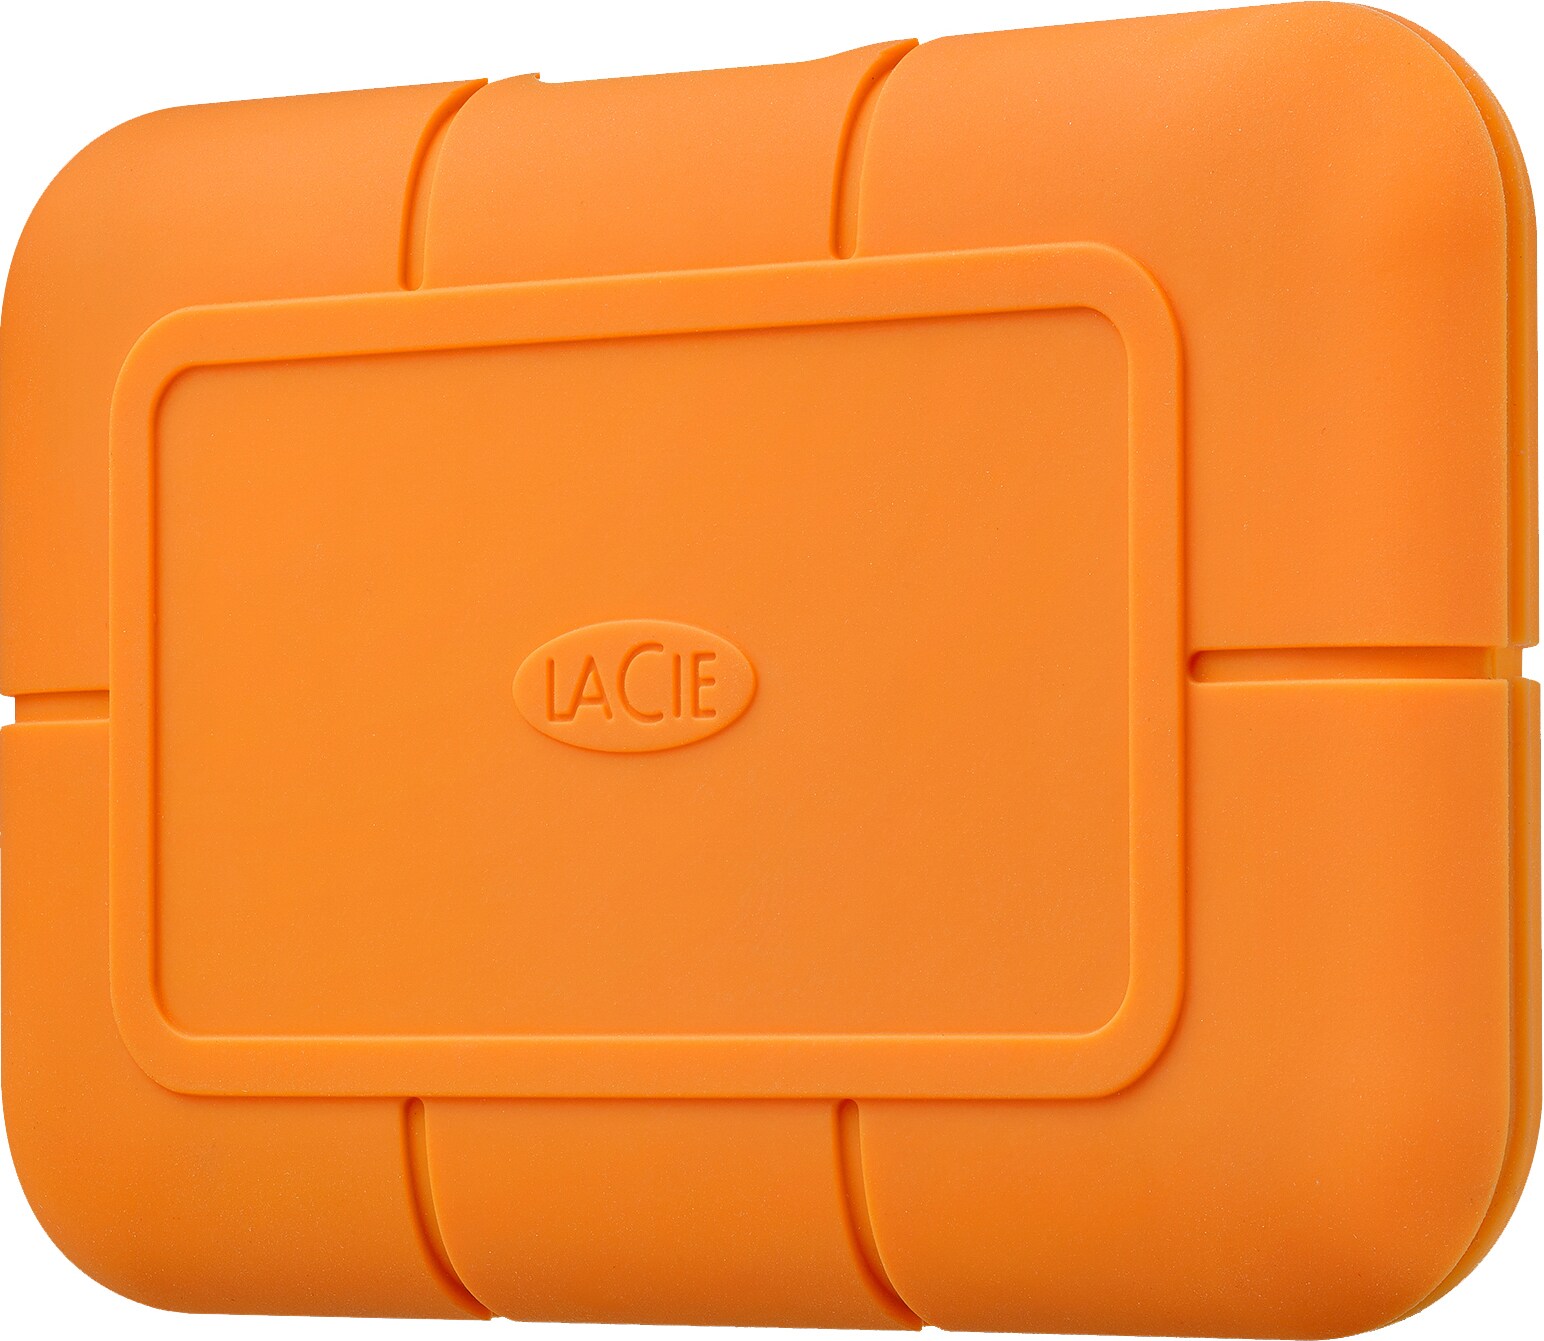 LaCie Rugged SSD 500 GB ekstern harddisk (orange) | Elgiganten